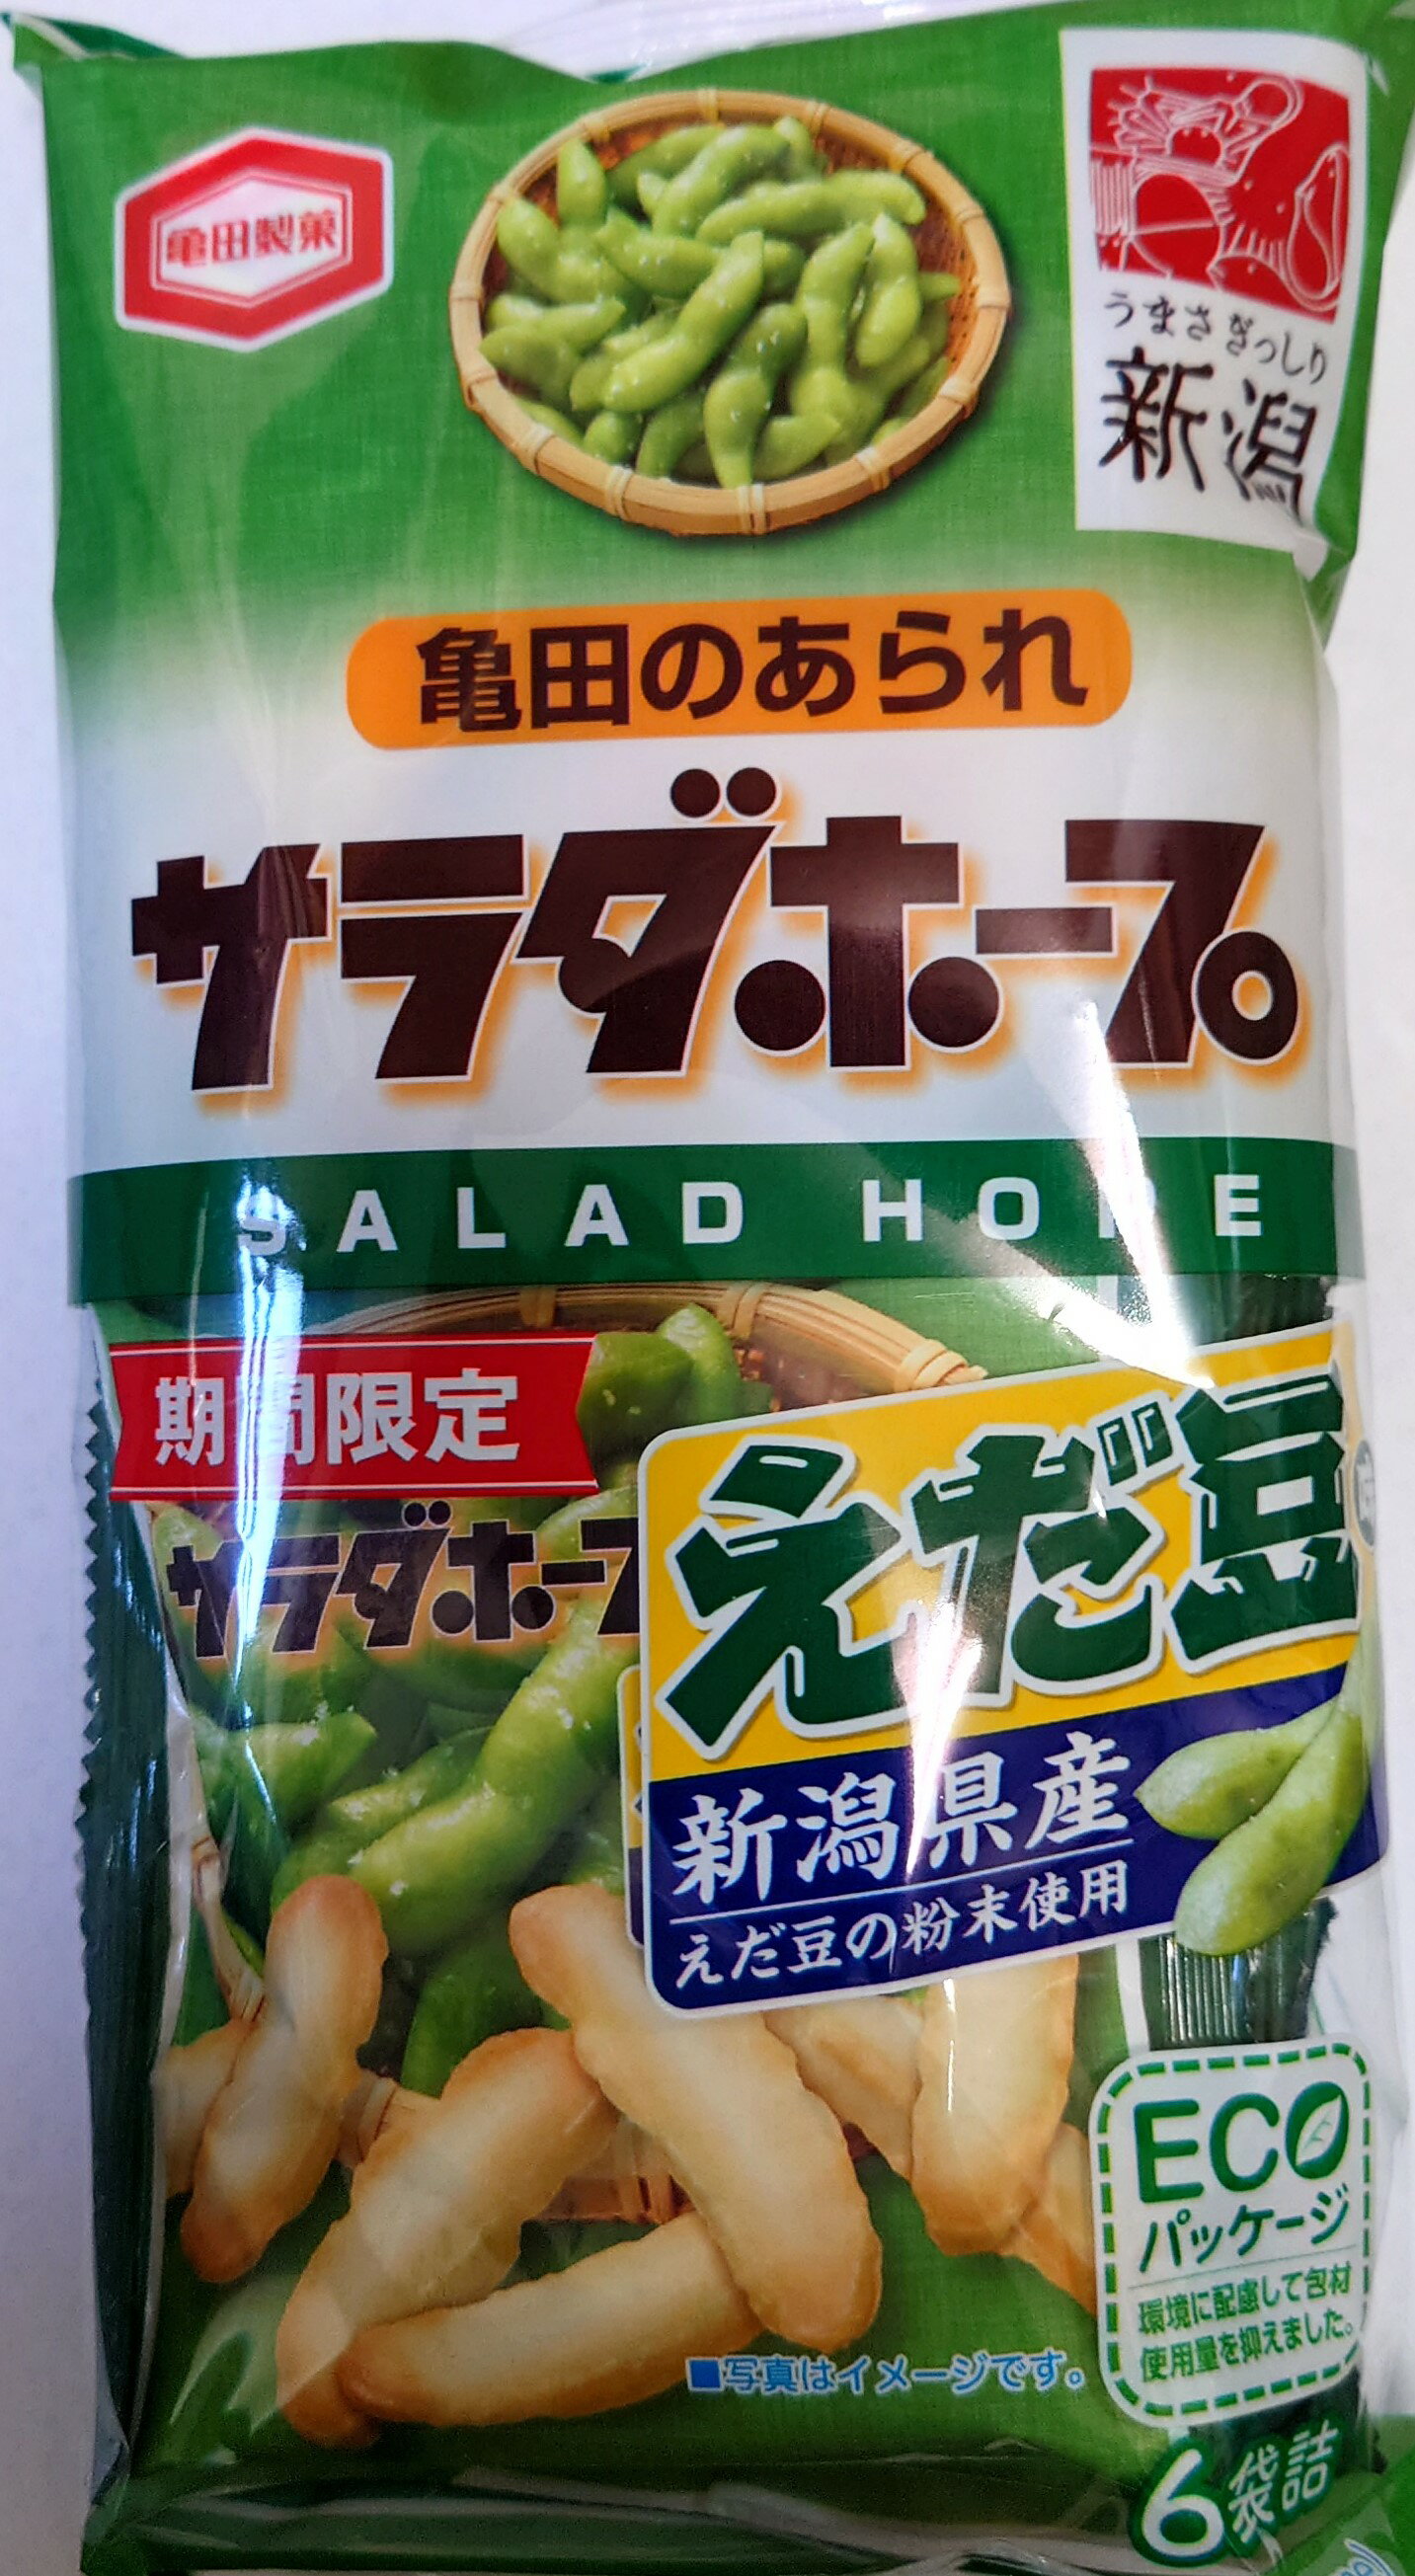 亀田製菓 サラダホープ 枝豆味 65g×3袋 新潟お土産